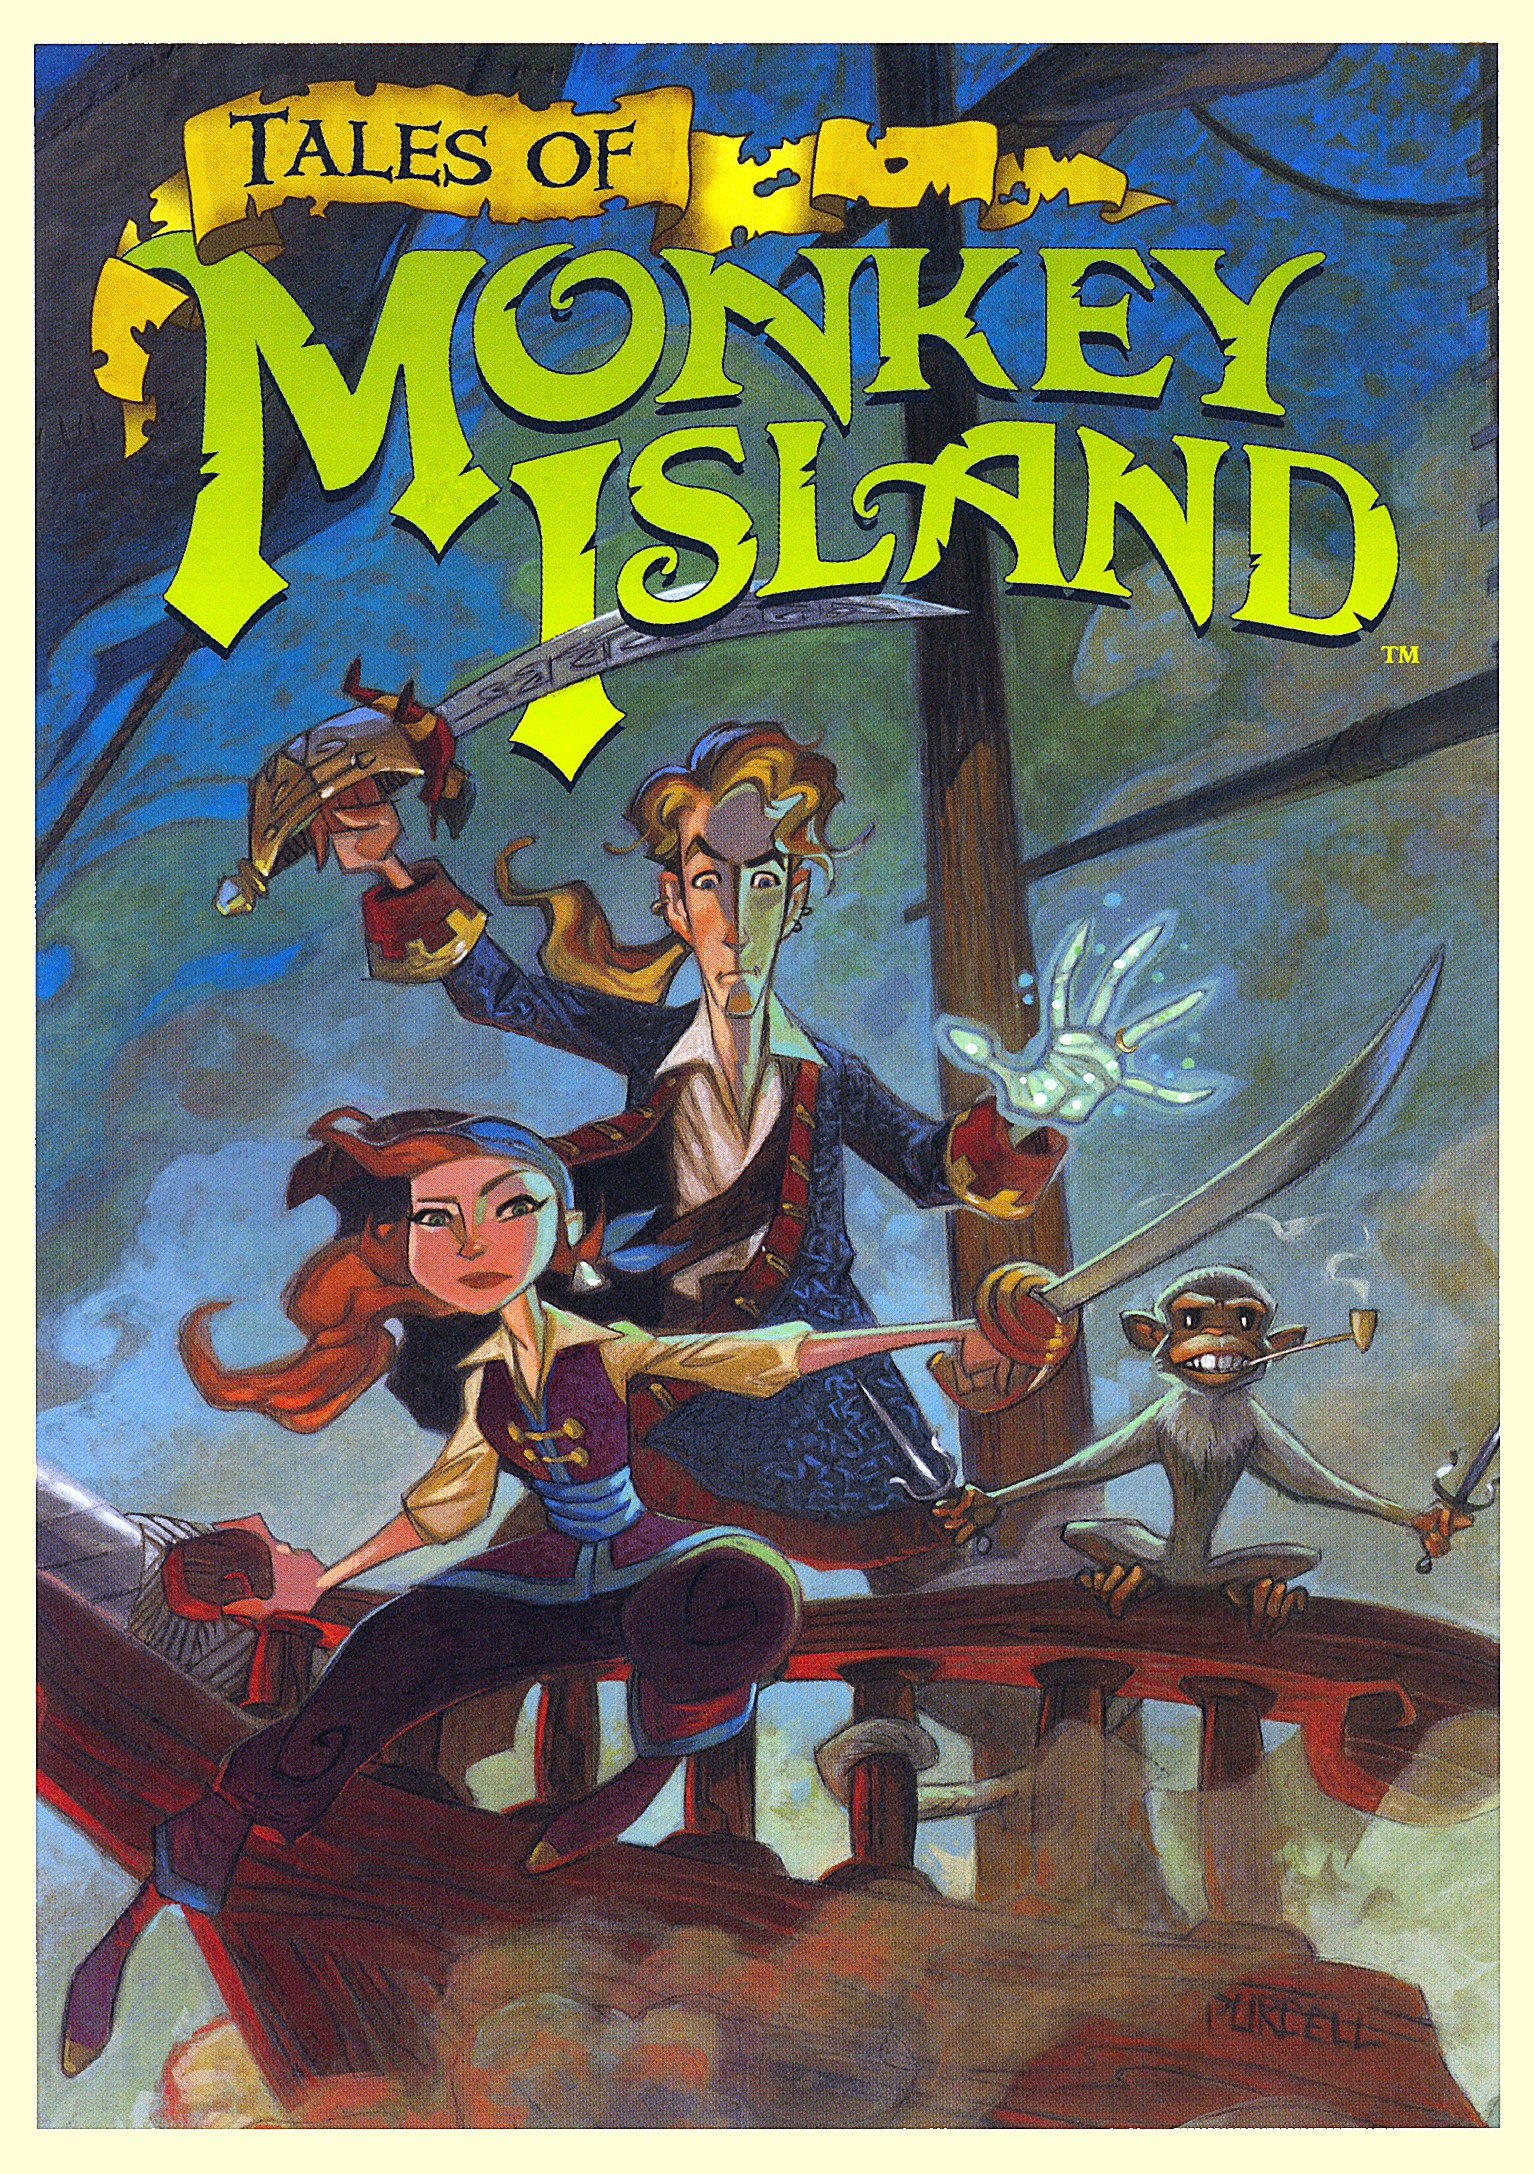 'Tales of Monkey island'